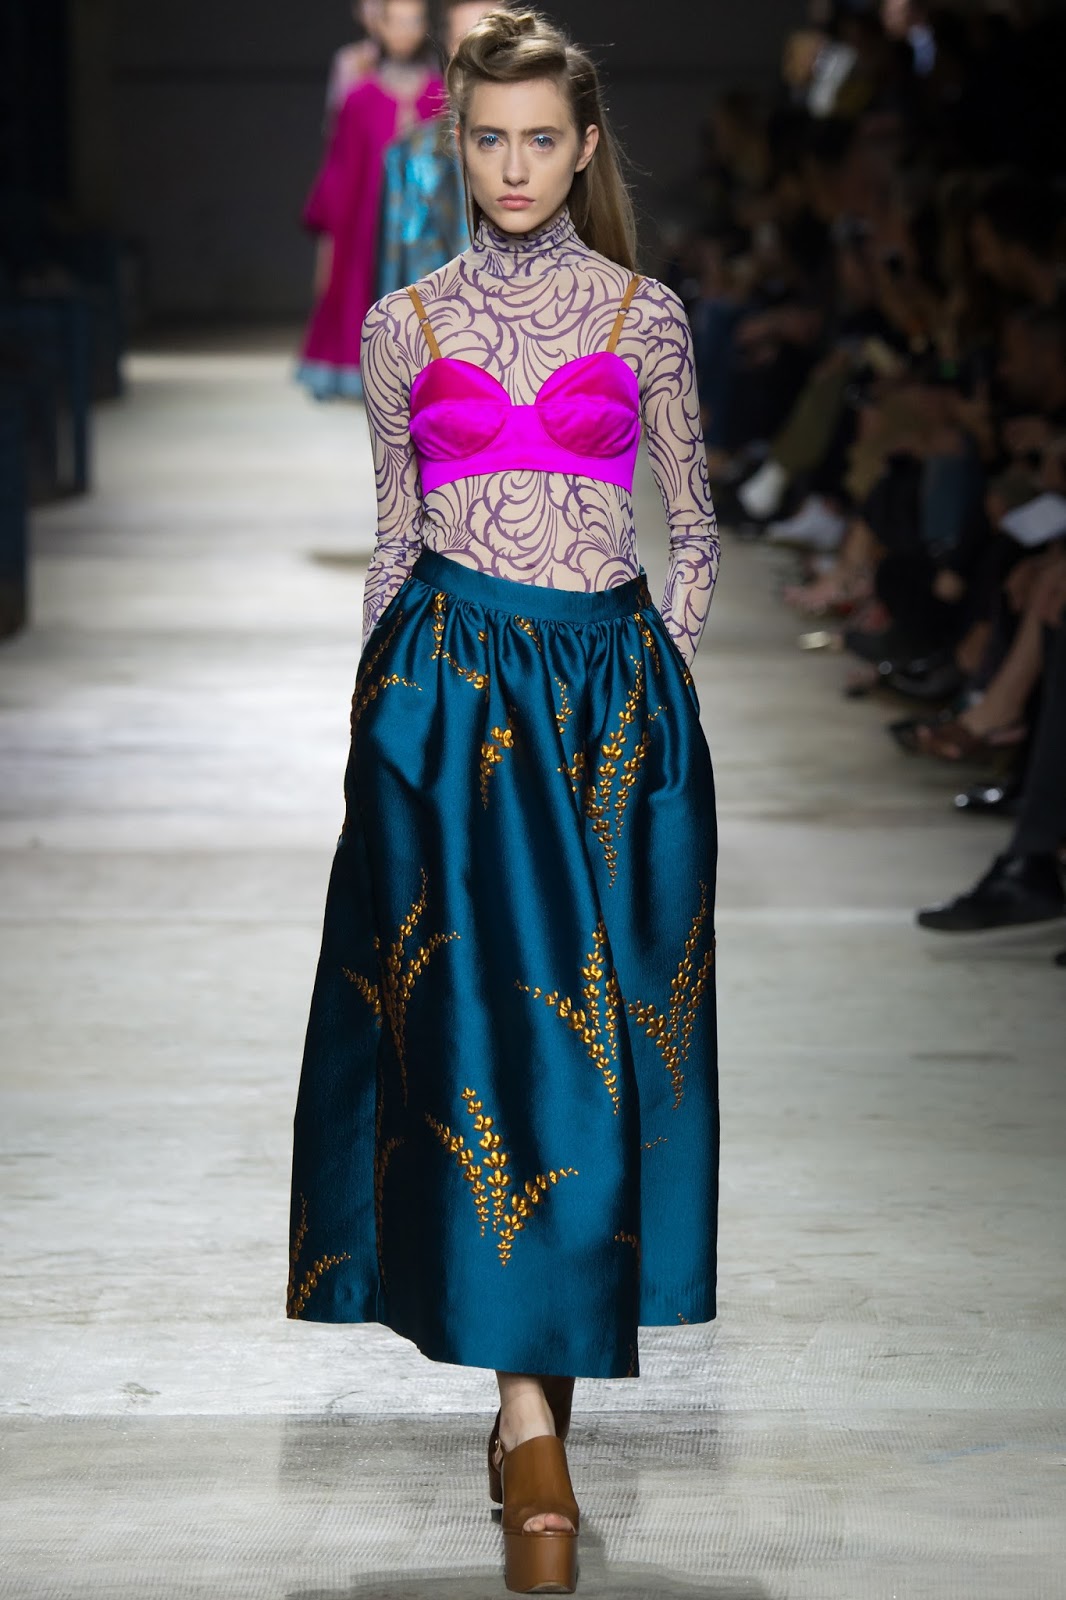 paris fashion week spring 2016, look catwalk model designer